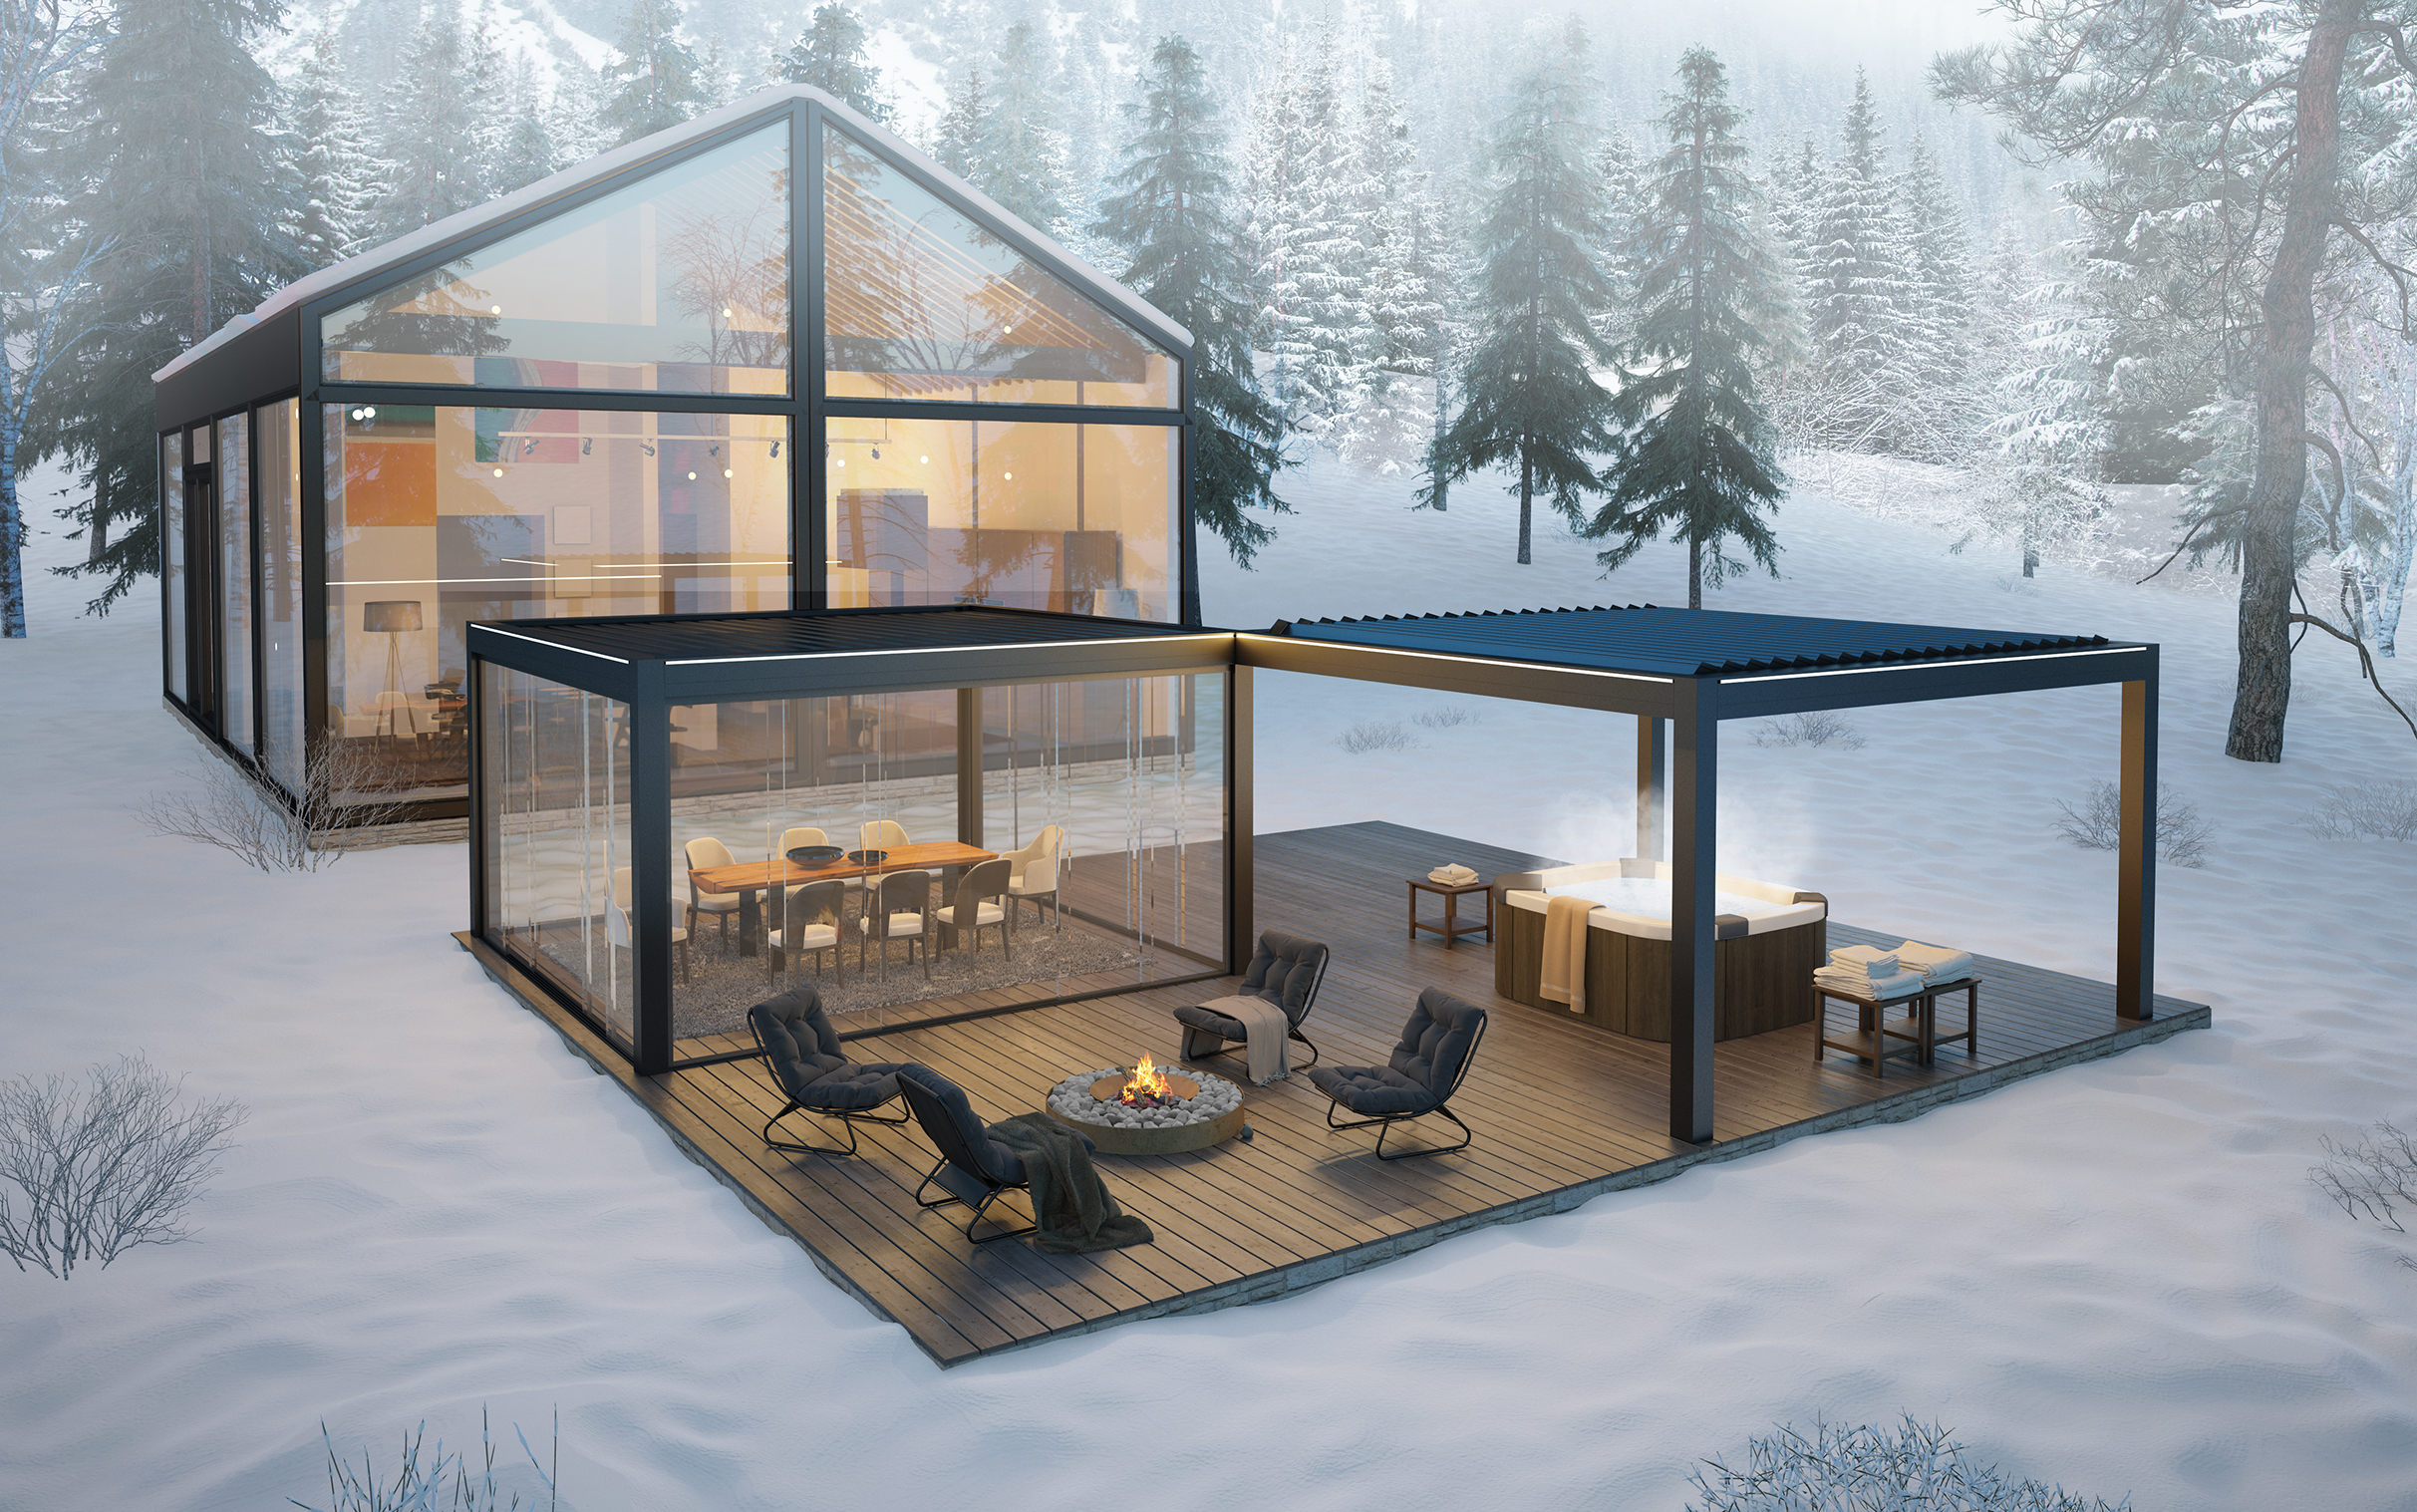 Soluzioni per vivere l’outdoor, anche in inverno